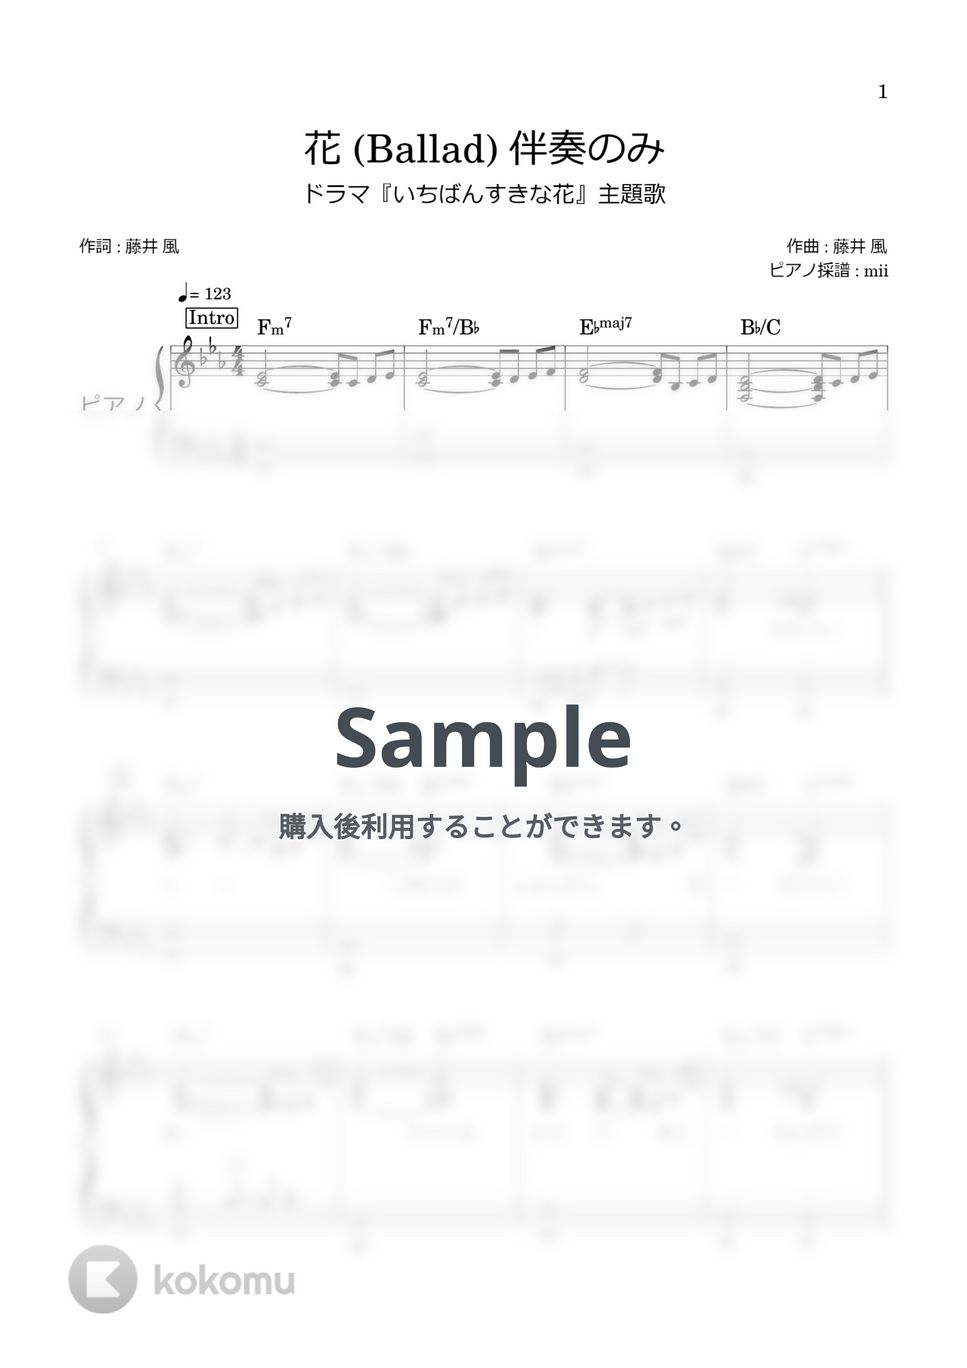 藤井風 - 花(Ballad) (ピアノ伴奏 採譜 いちばんすきな花) by miiの楽譜棚